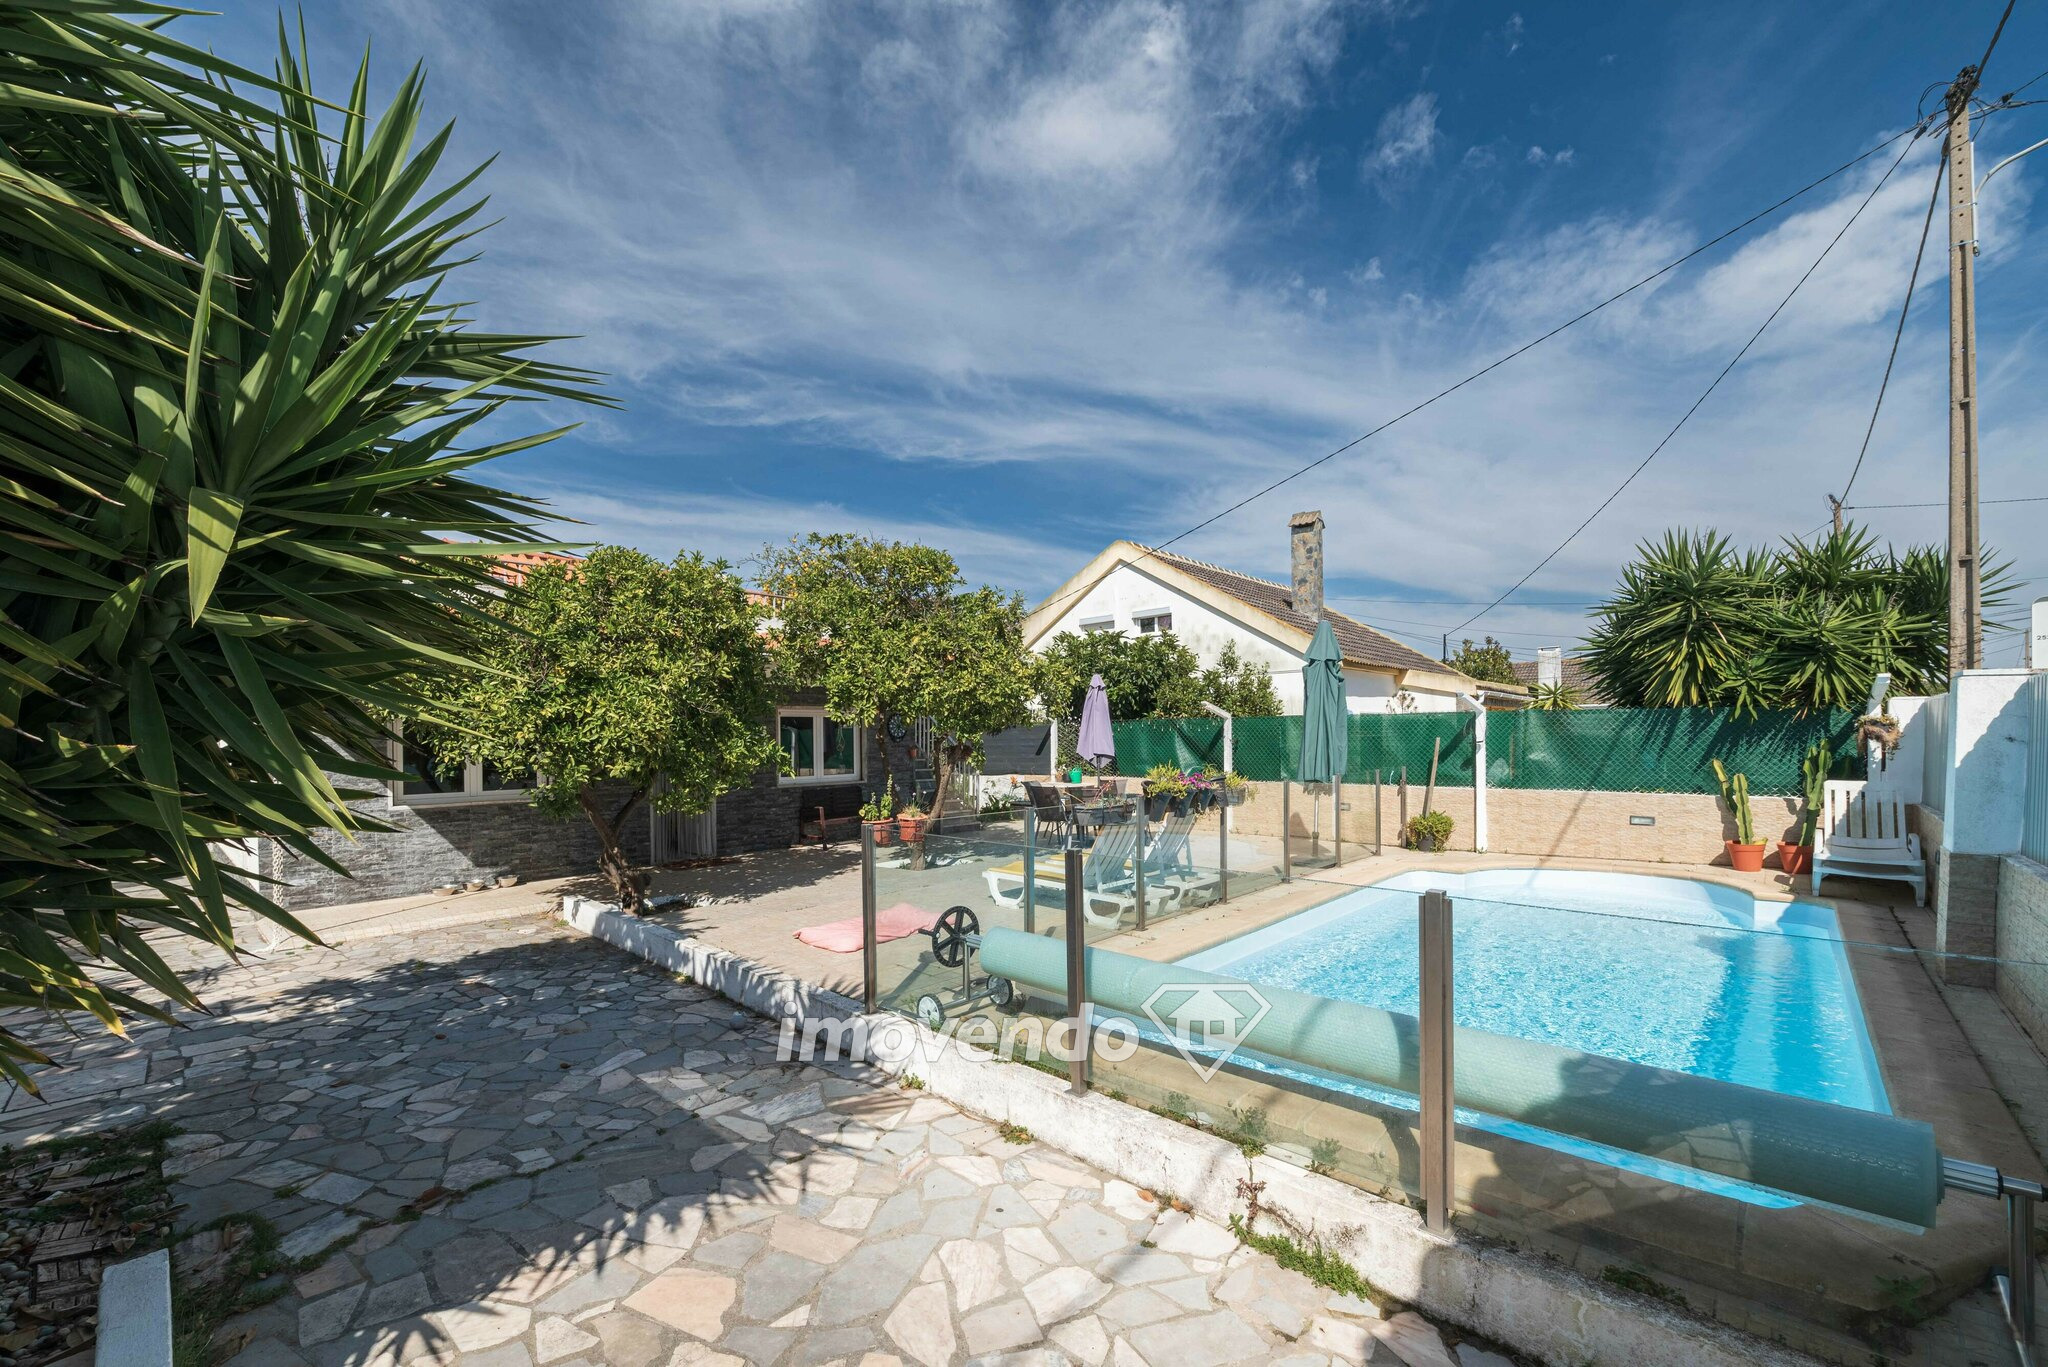 Moradia isolada T2+1, com piscina e terraço, na Charneca da Caparica